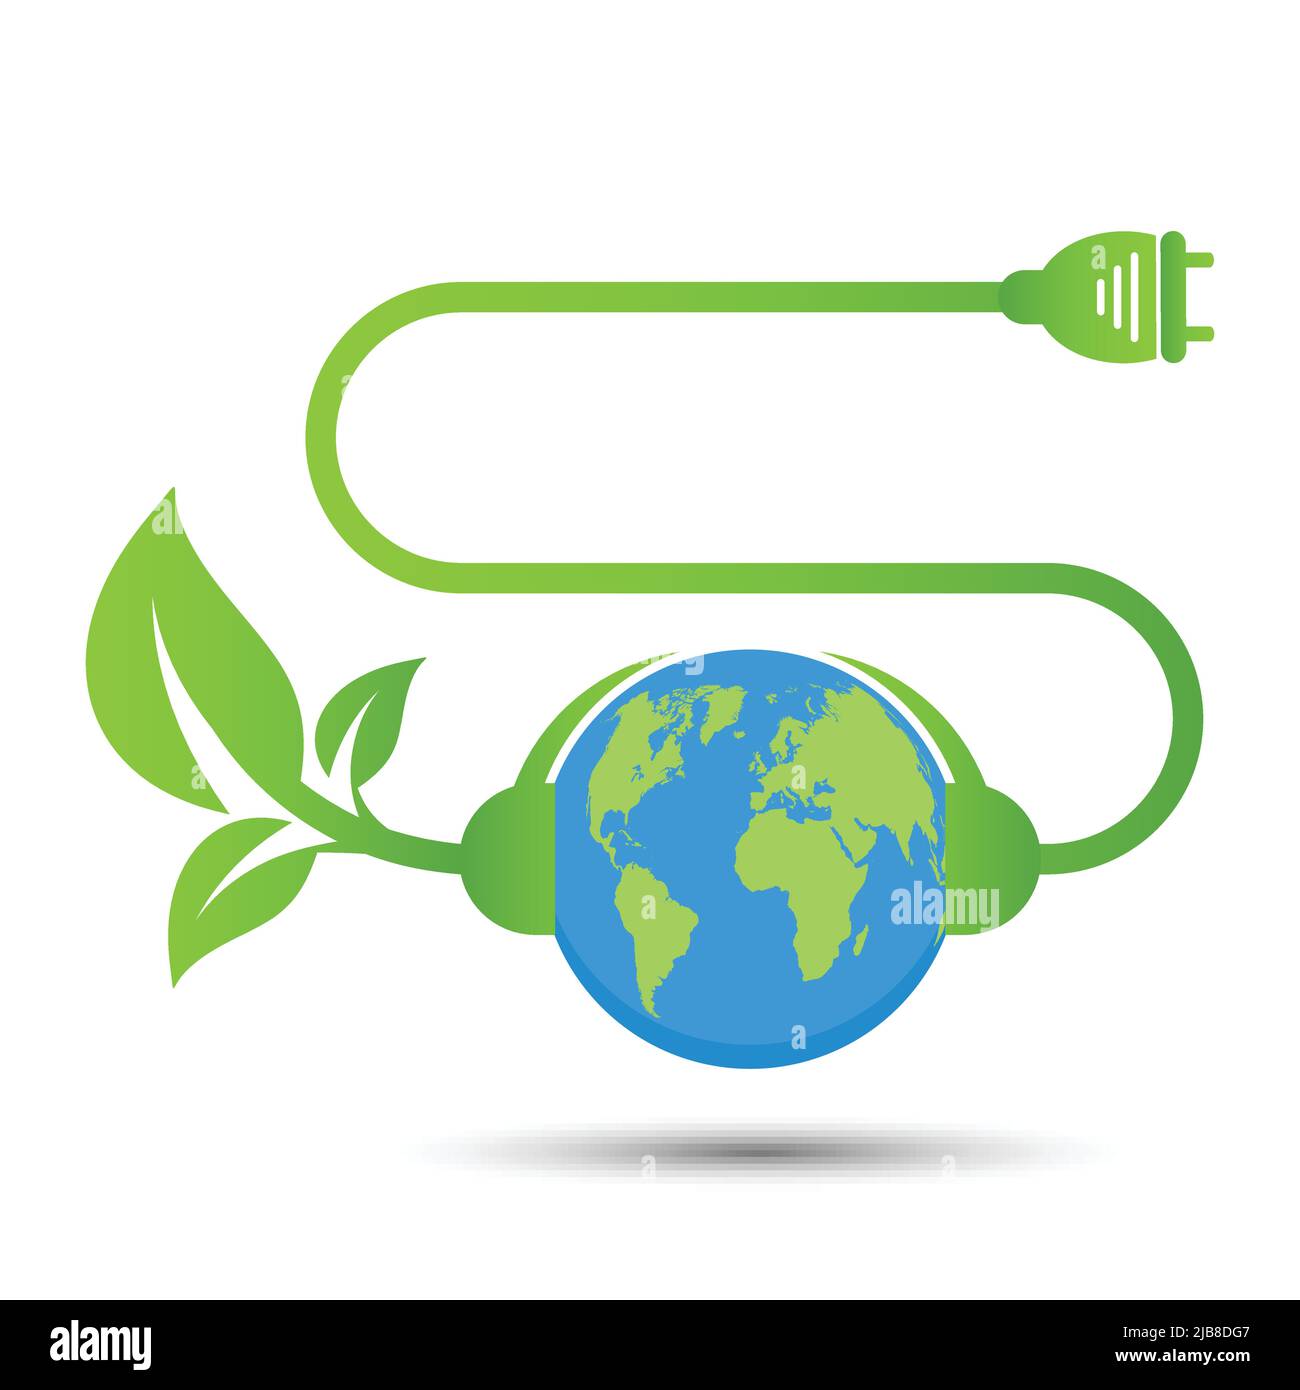 Las ideas de energía ahorran el concepto del mundo La ecología verde del enchufe de energía la